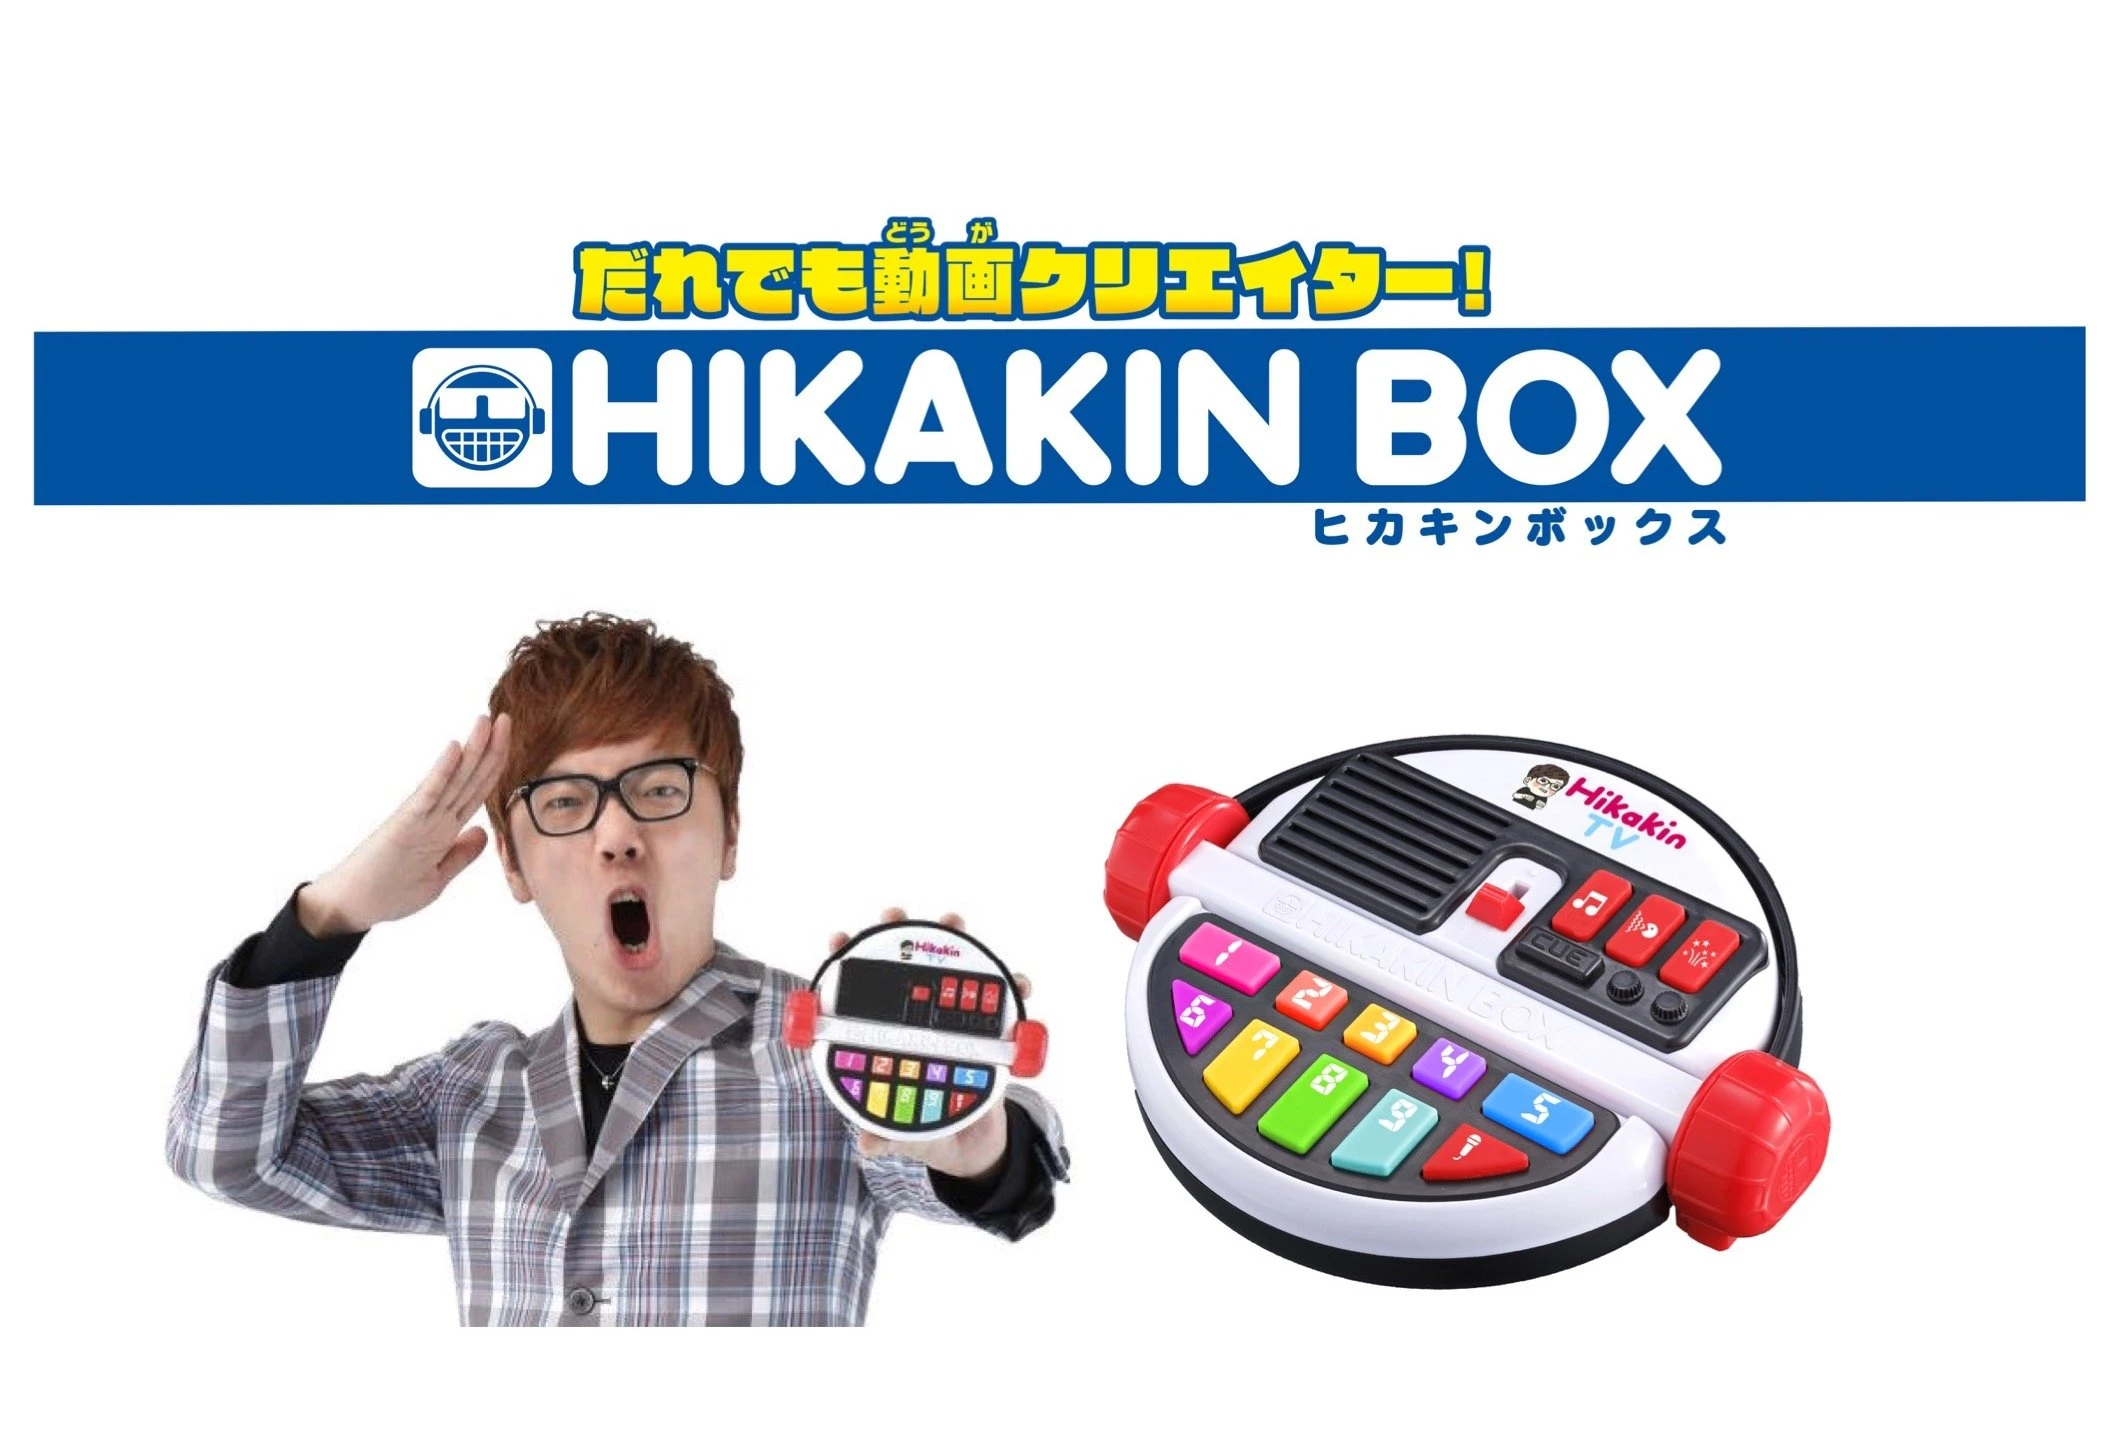 発売延期】本人監修の玩具「HIKAKIN BOX」 ボイスチェンジャーで